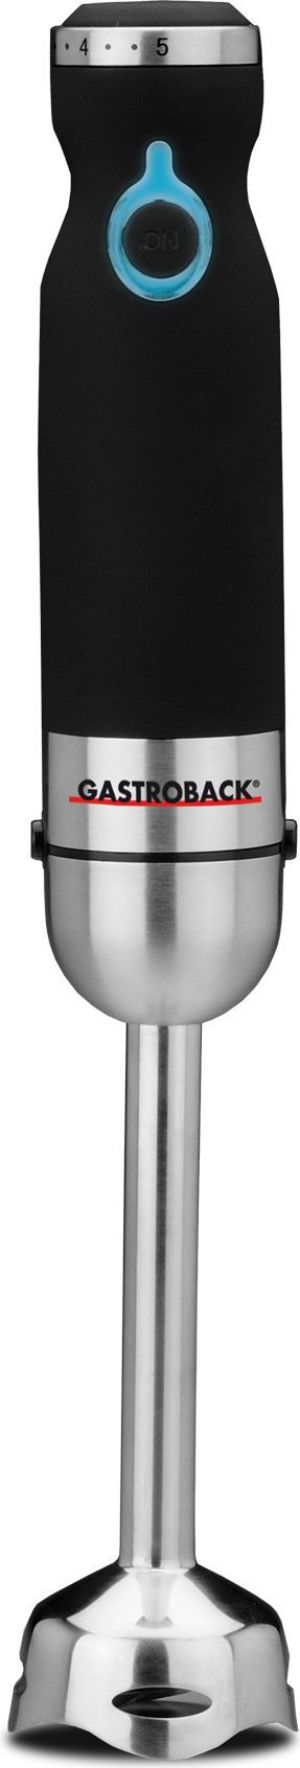 Blender Gastroback Gastroback 40975 1